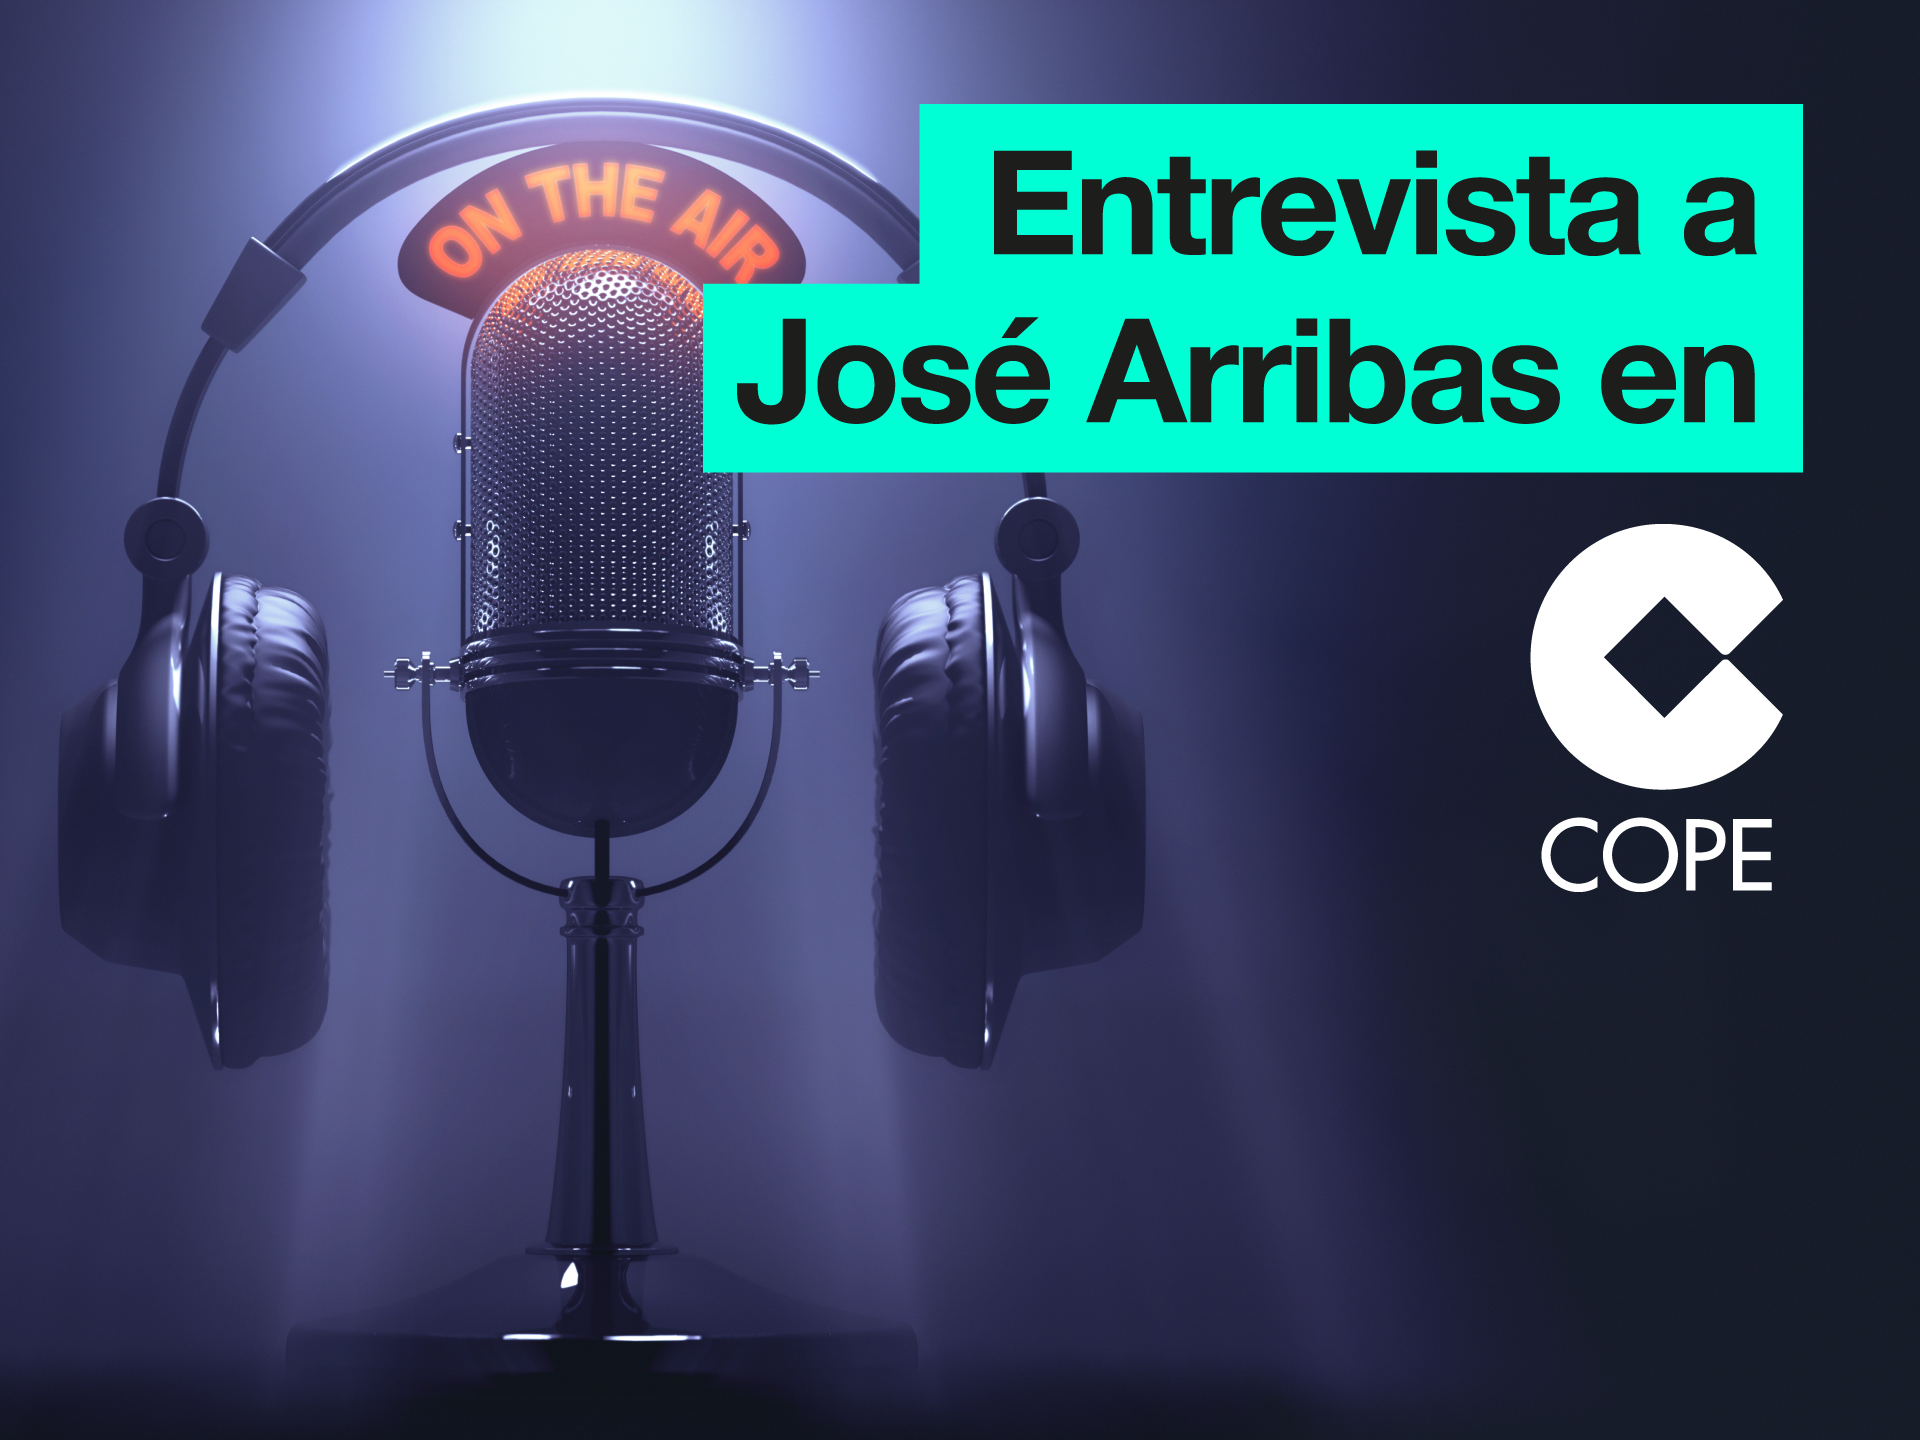 Entrevista a José Arribas en el programa de Herrera en COPE - Parnaso